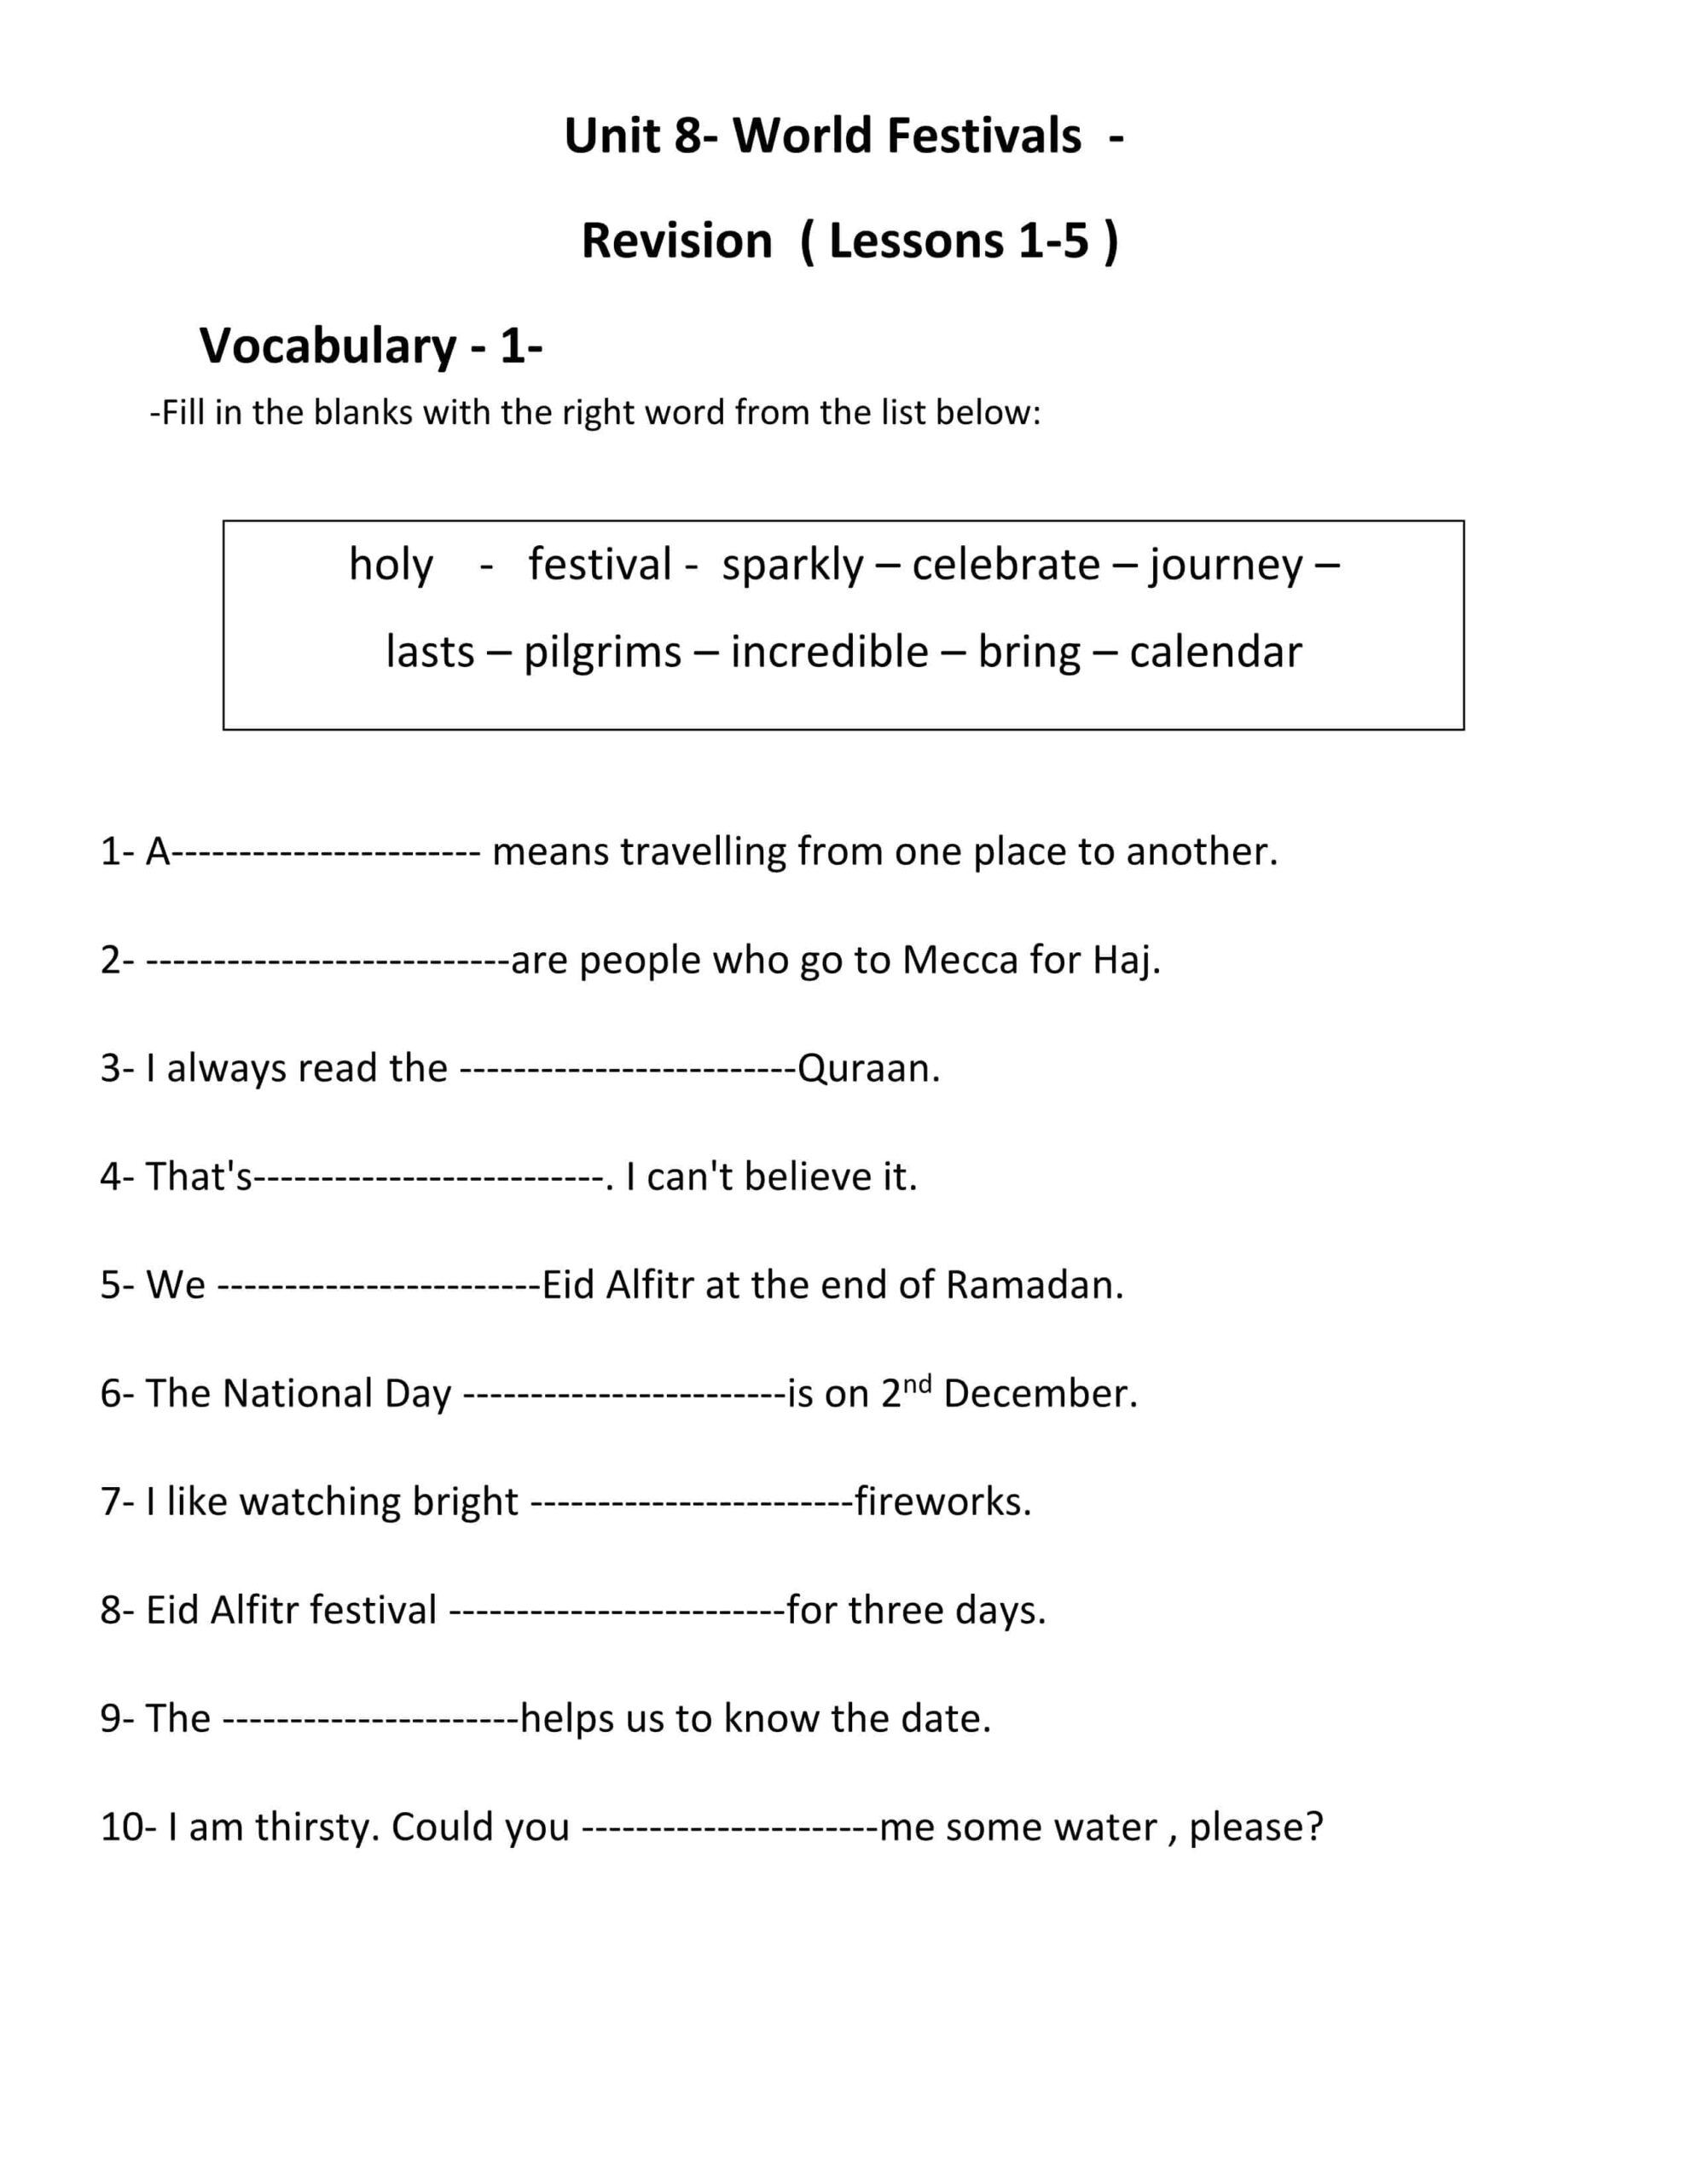 أوراق عمل Unit 8 Revision Lessons 1-5 اللغة الإنجليزية الصف الثامن 